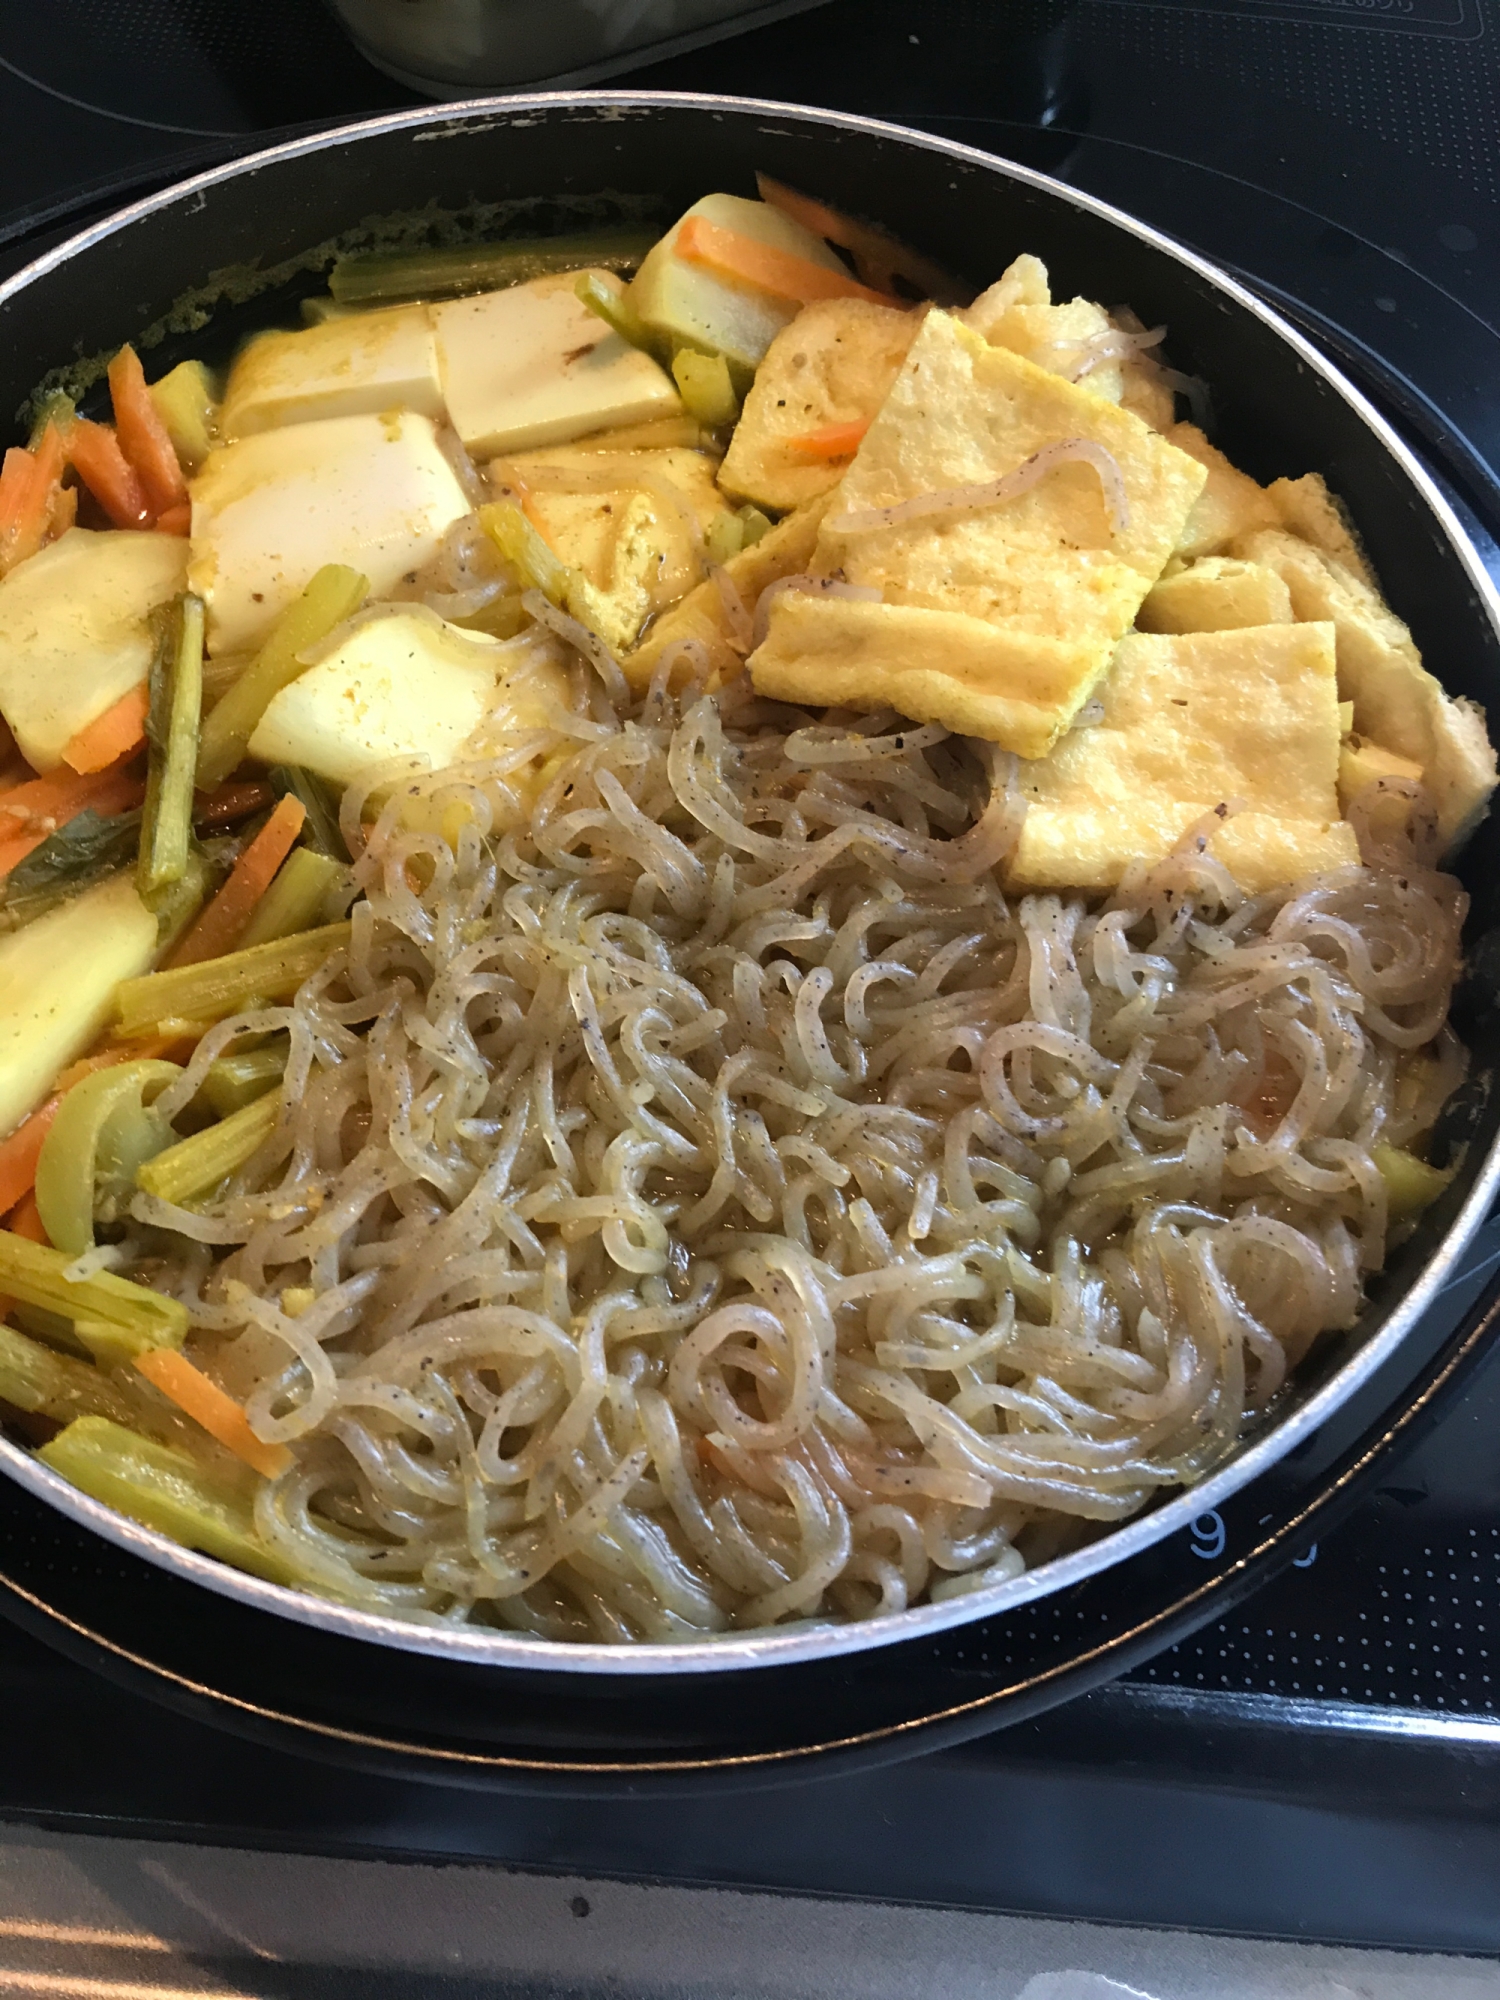 カレー味の豆腐鍋